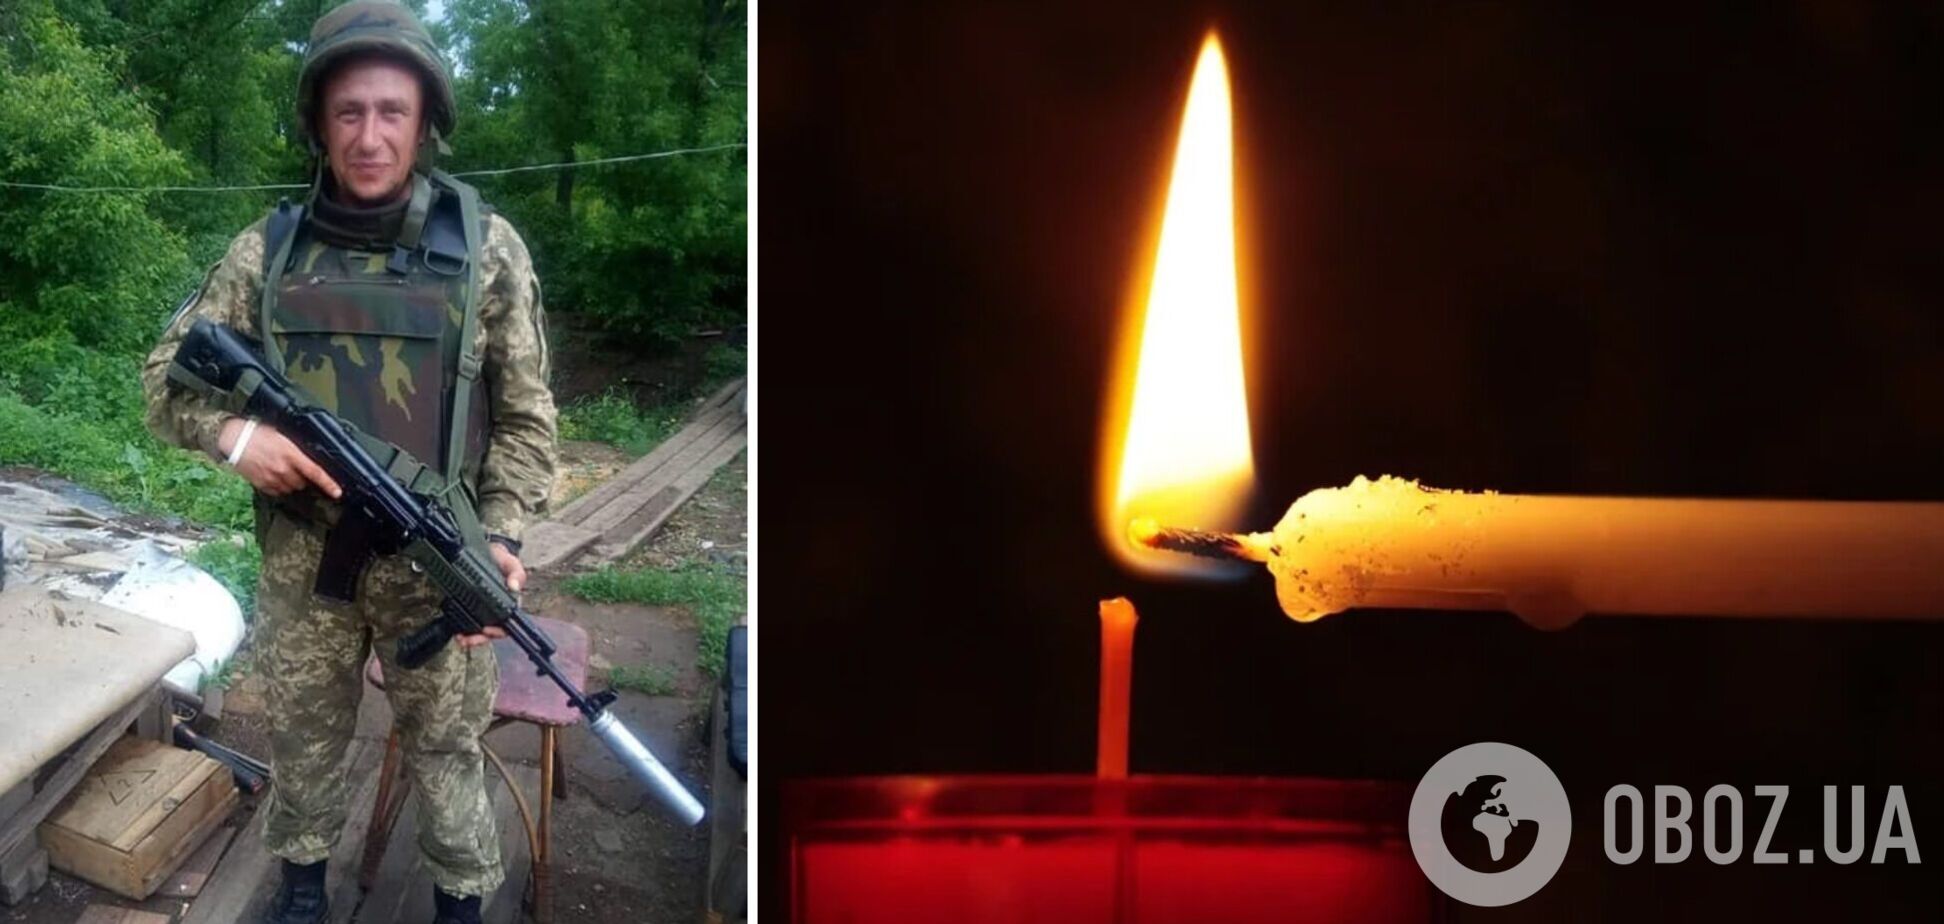 Названо имя бойца ВСУ, погибшего на Донбассе: у него остался сын. Фото